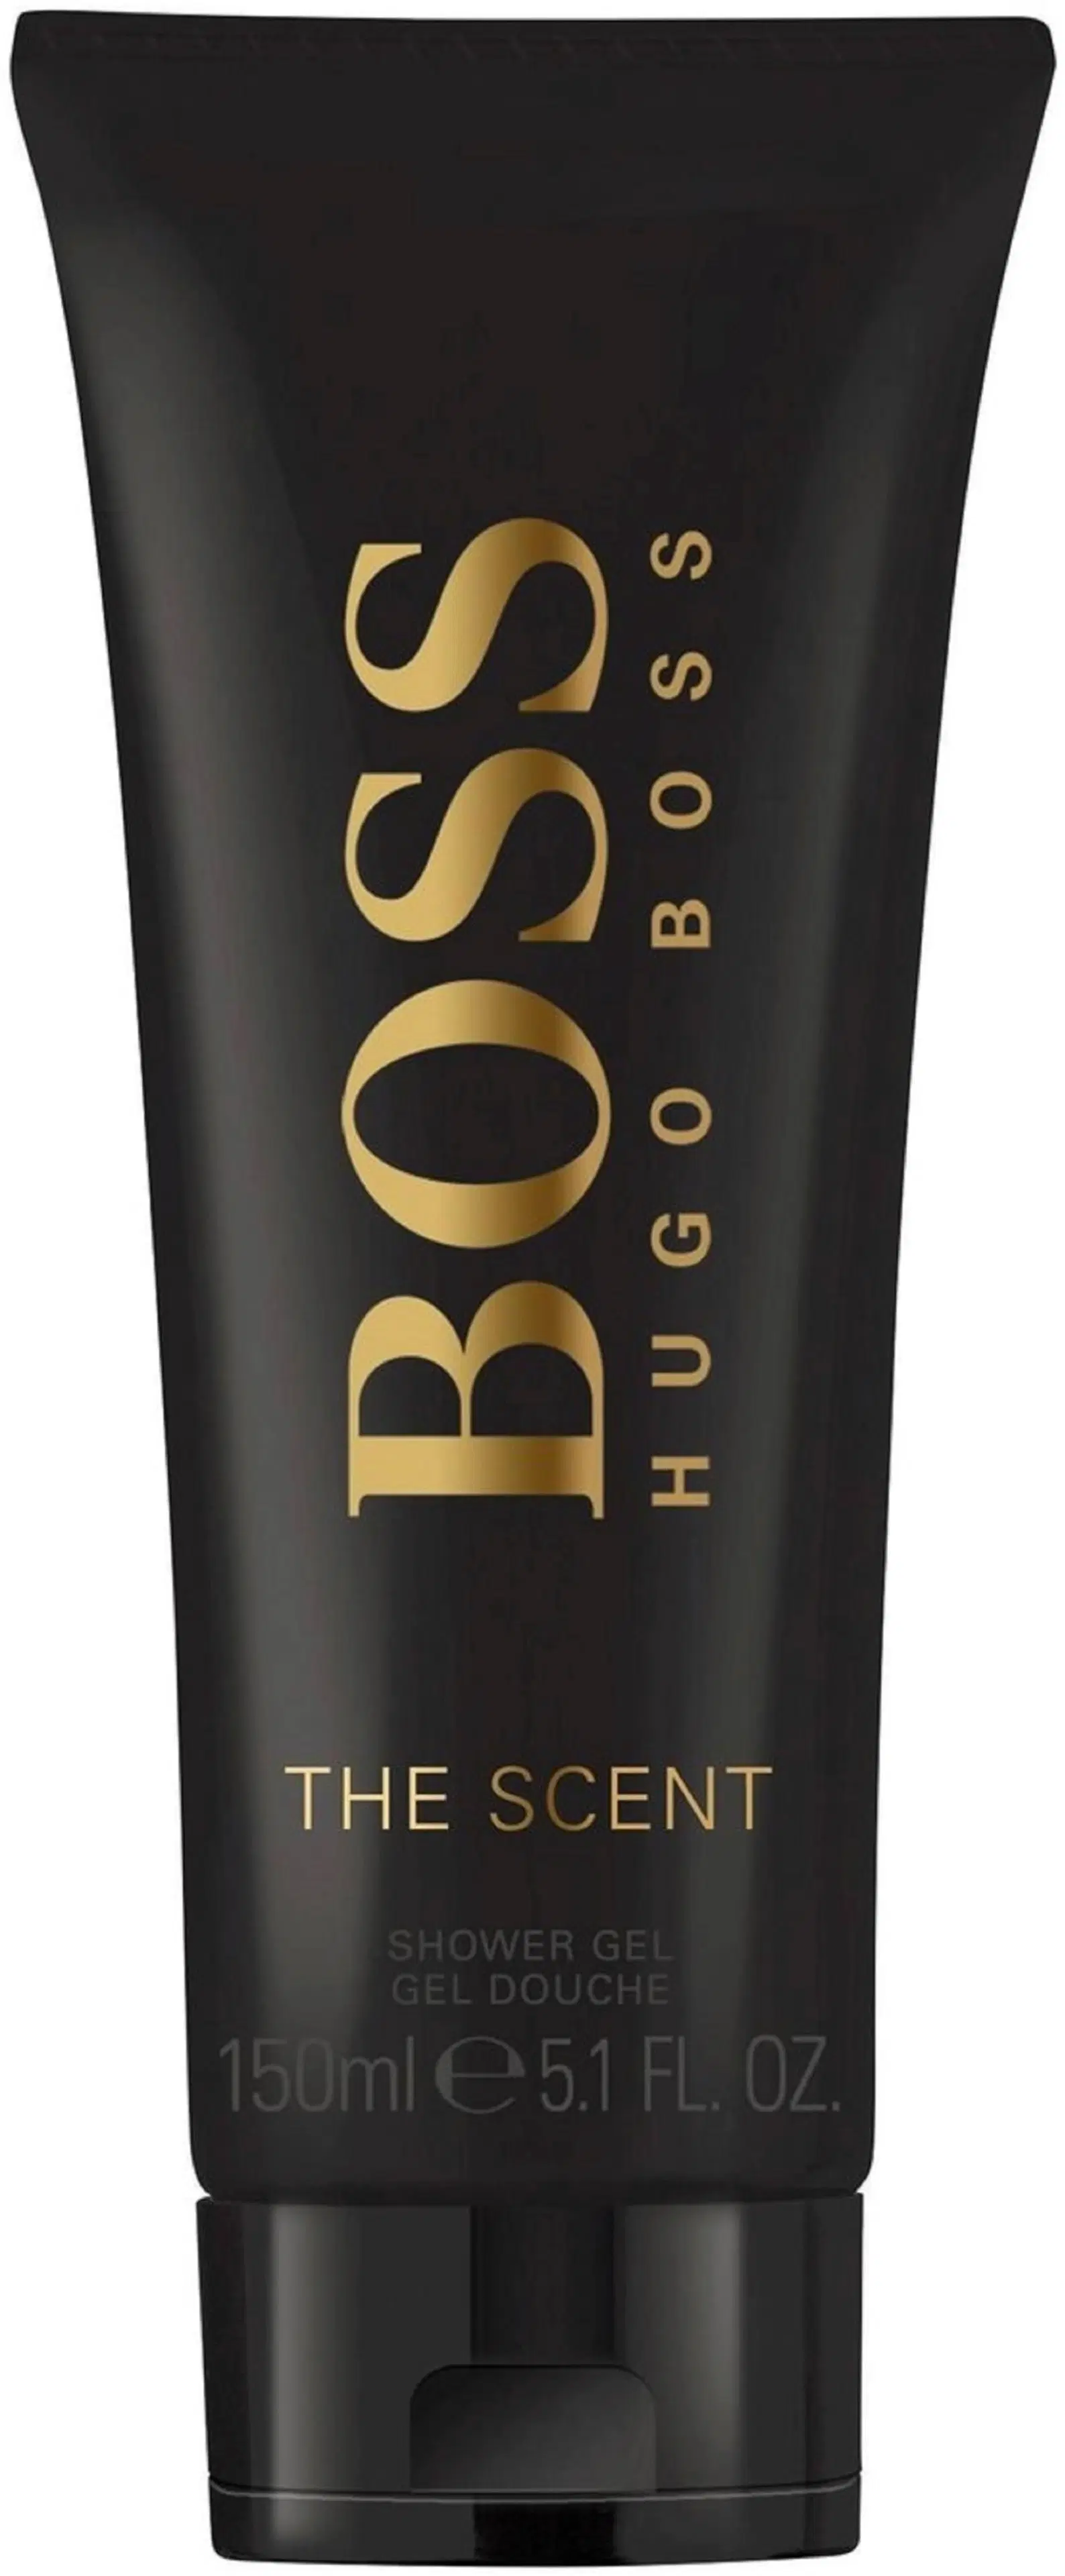 Hugo Boss The Scent Shower Gel suihkugeeli 150 ml